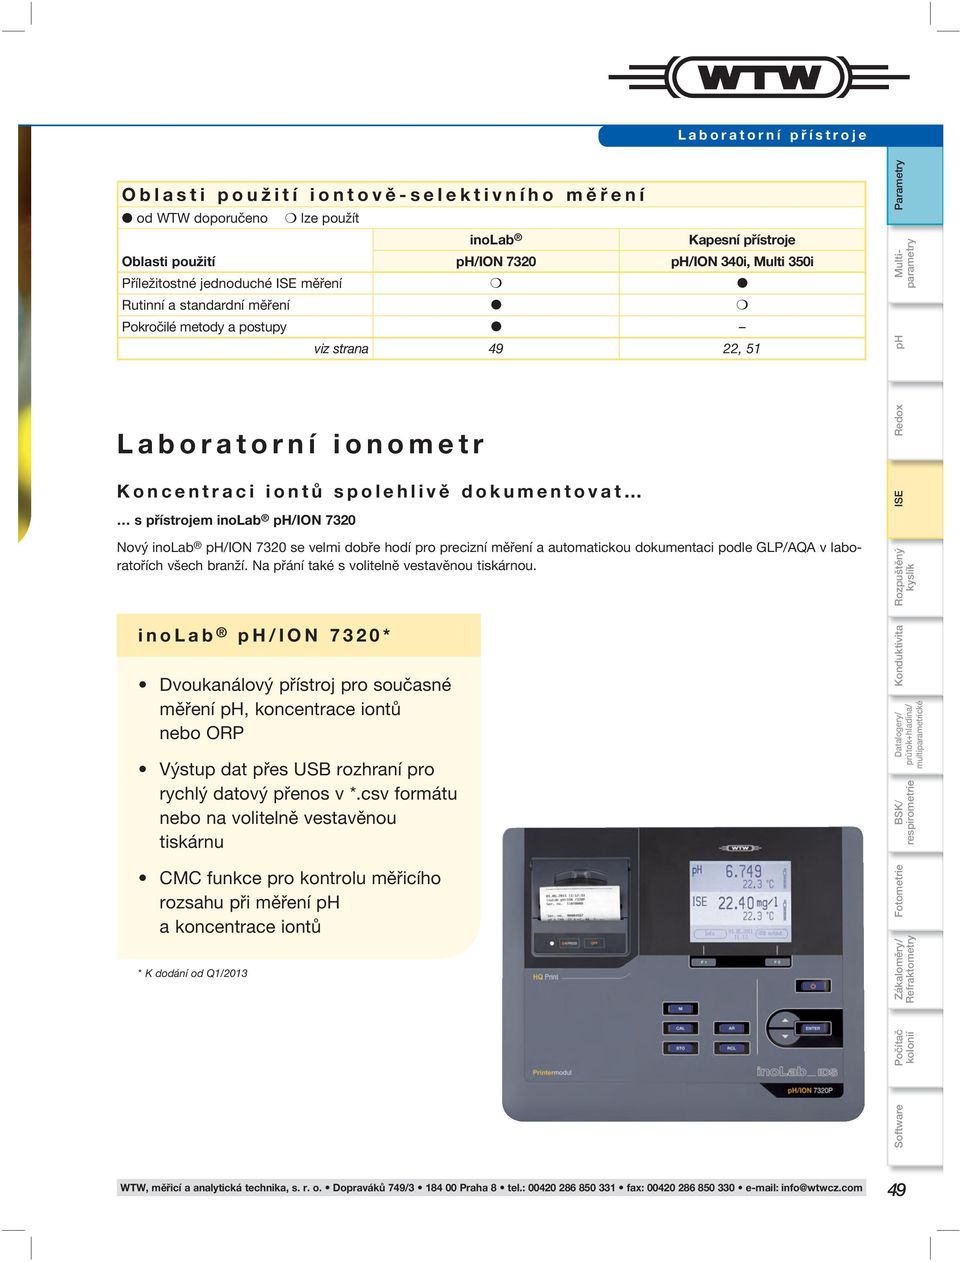 se velmi dobře hodí pro precizní měření a automatickou dokumentaci podle GLP/AQA v laboratořích všech branží. Na přání také s volitelně vestavěnou tiskárnou.